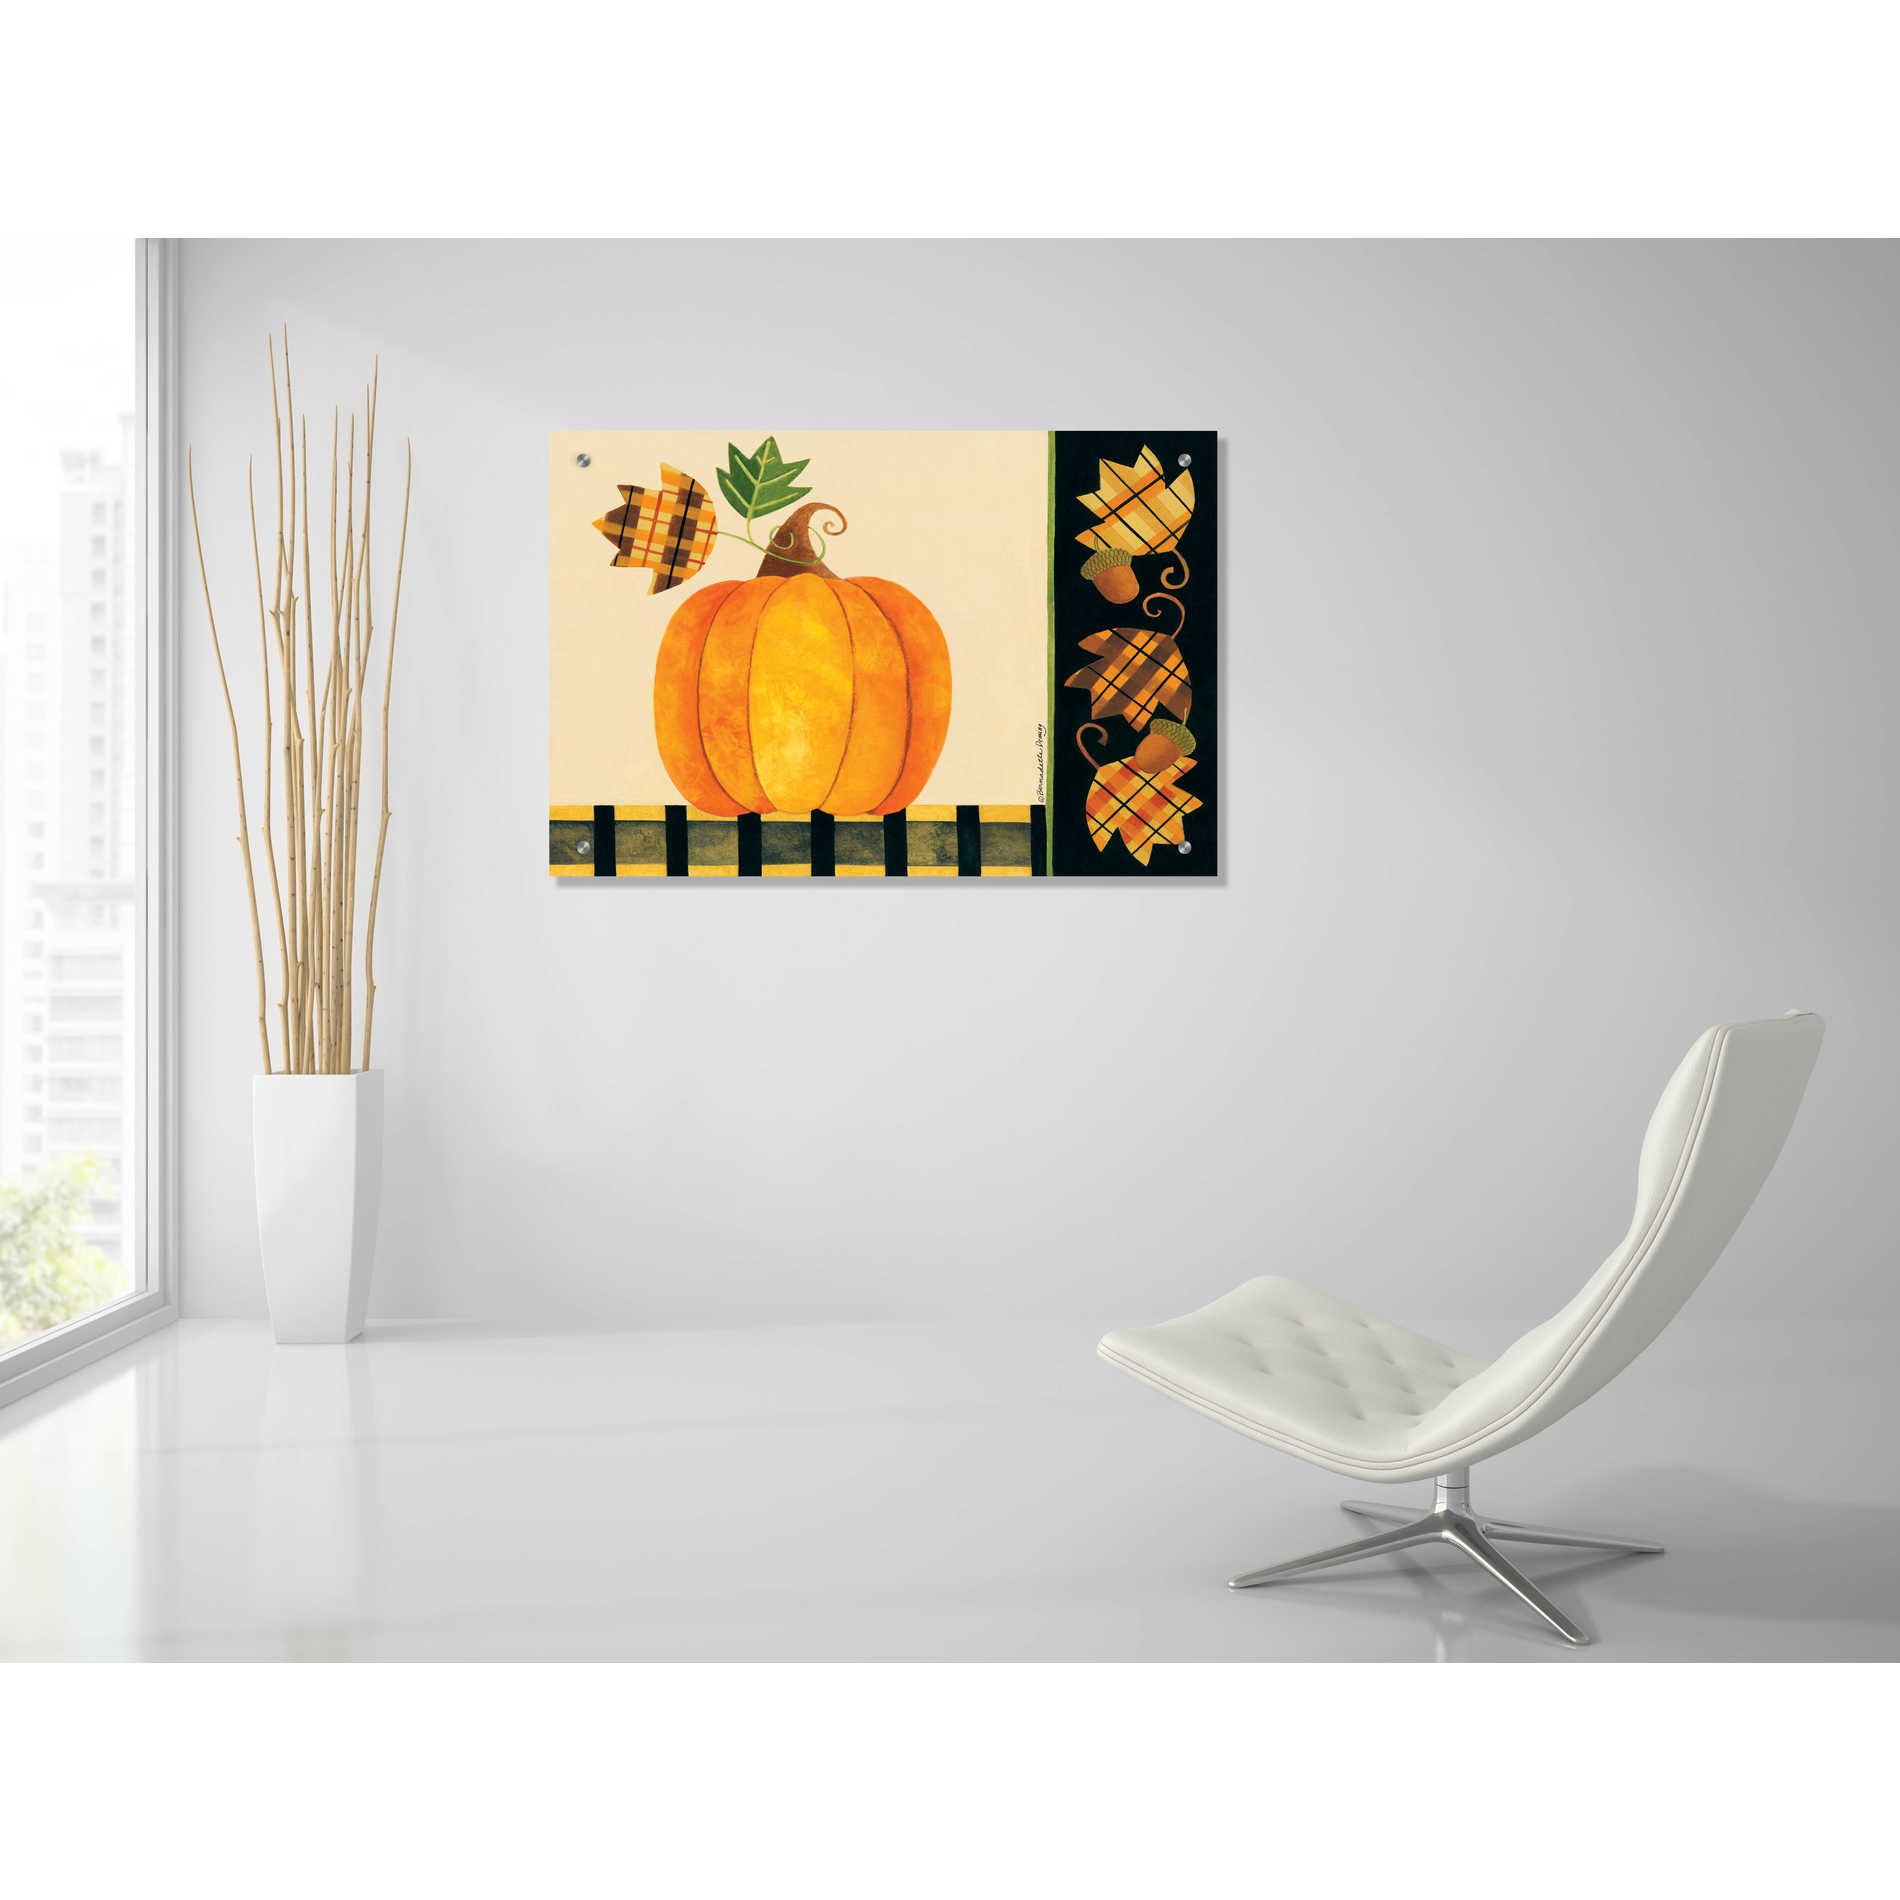 Epic Art "Pumpkin" by Bernadette Deming, Acrylic Glass Wall Art,36x24